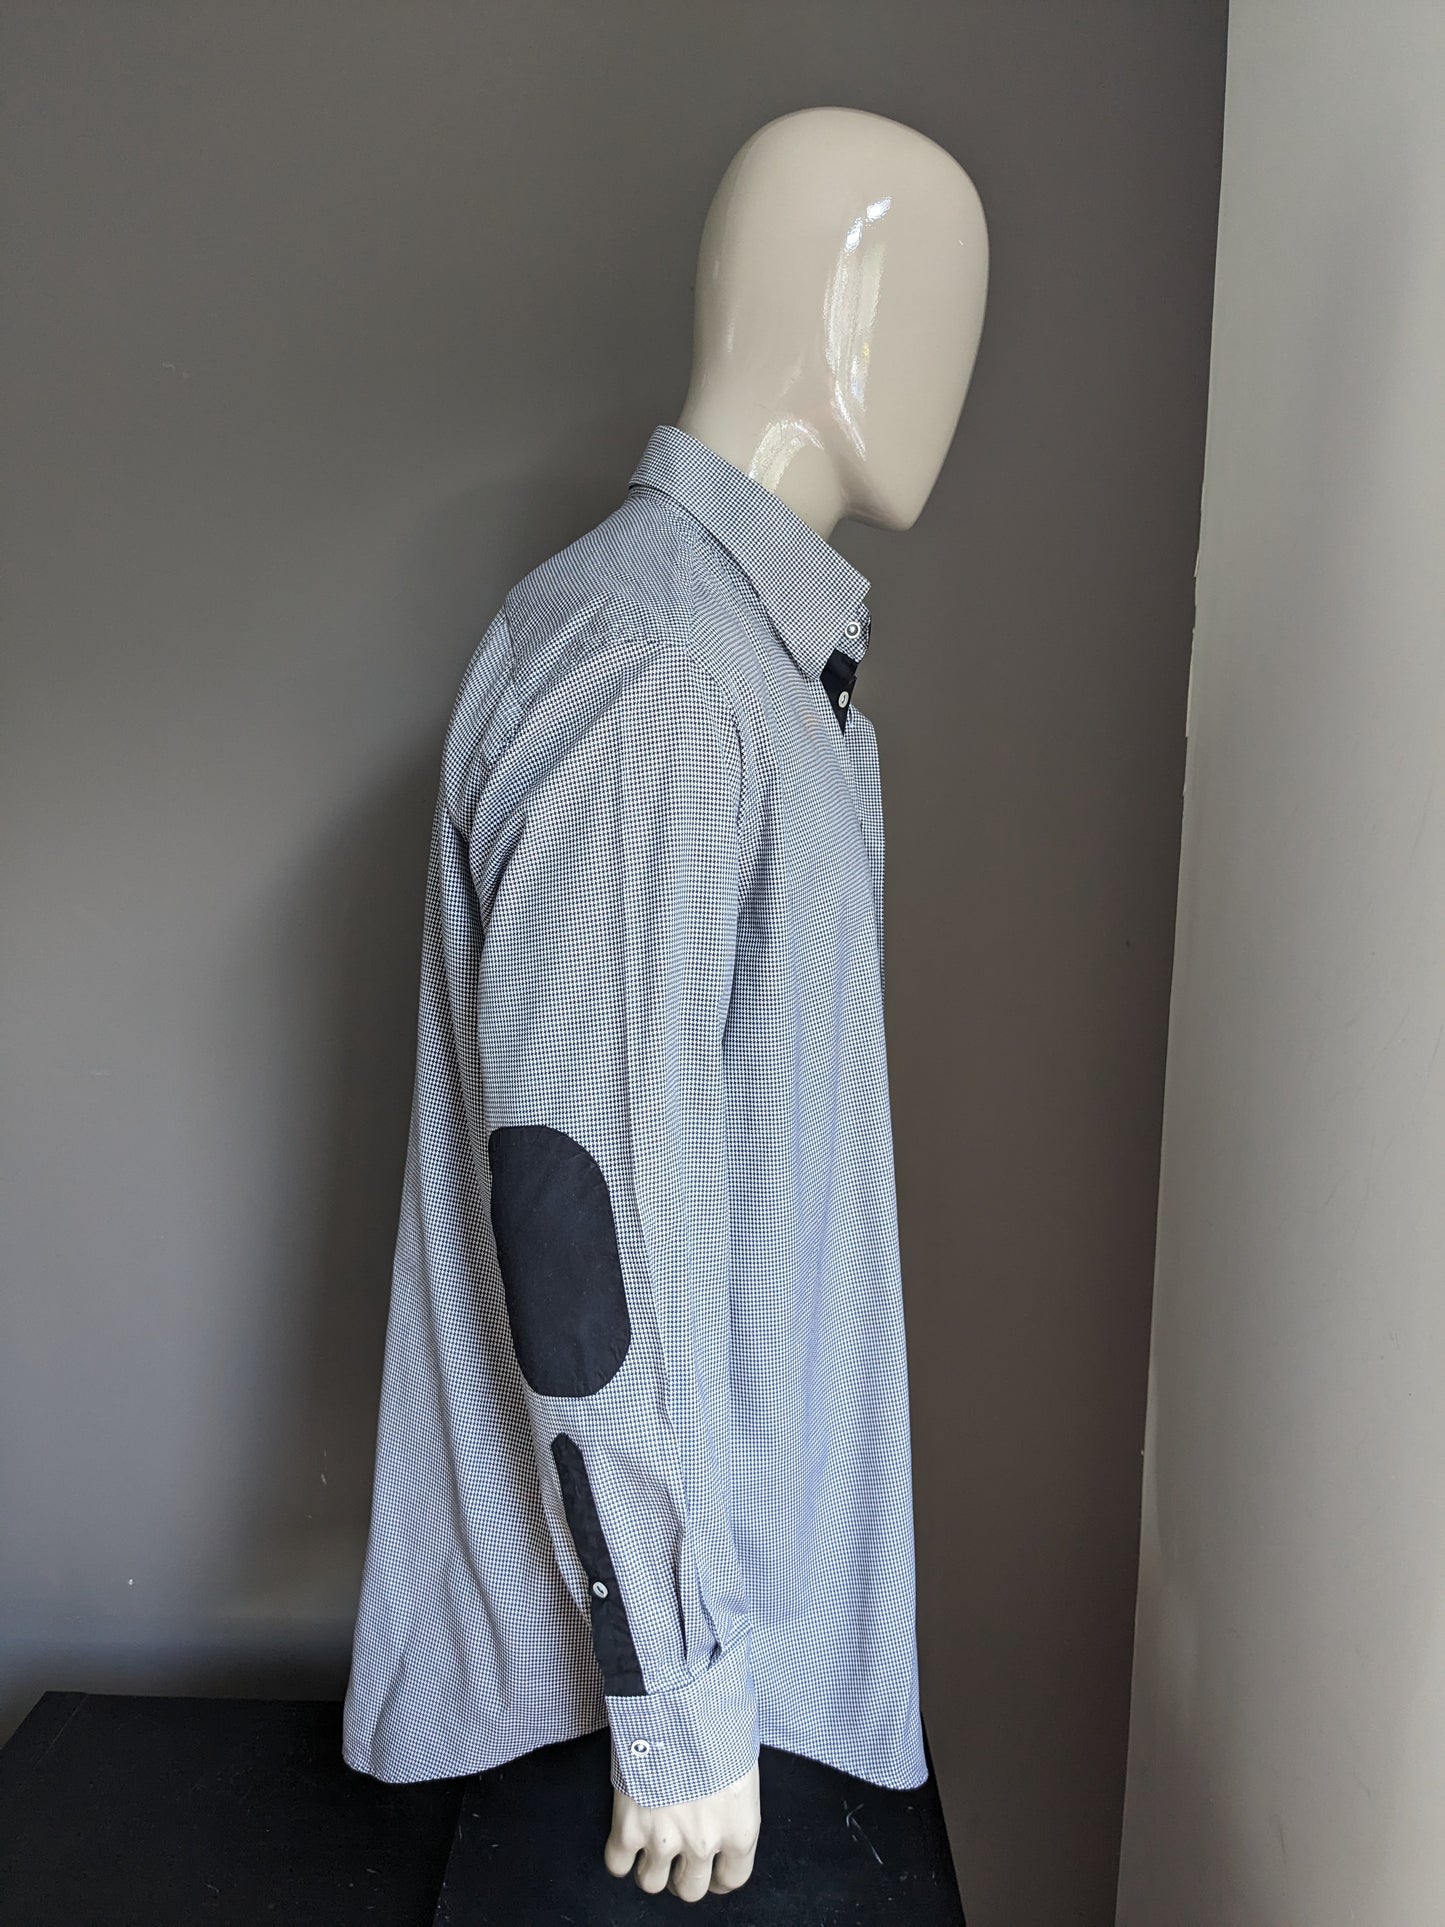 BLUMFONTAIN Camisa con parches de codo. Motivo en blanco y negro. Tamaño 2xl / xxl.